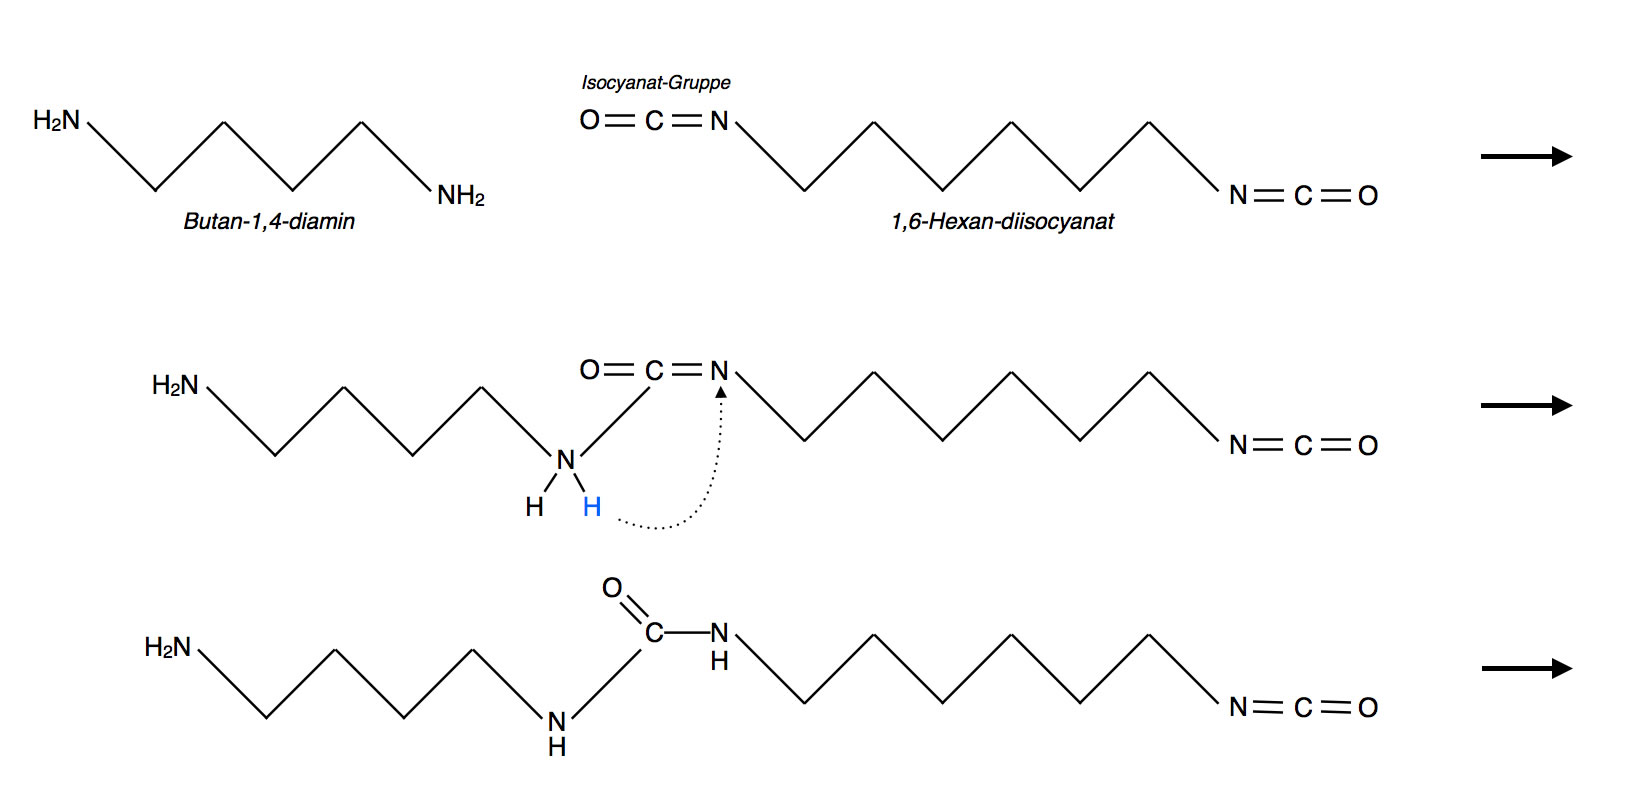 Polyaddition von 1 Molekl Butan-1,4-diamin und 1 Molekl Hexan,1,6-diisocyanat zu einem Polyharnstoff-Dimer, dargestellt mit einem (virtuellen) Zwischenschritt.